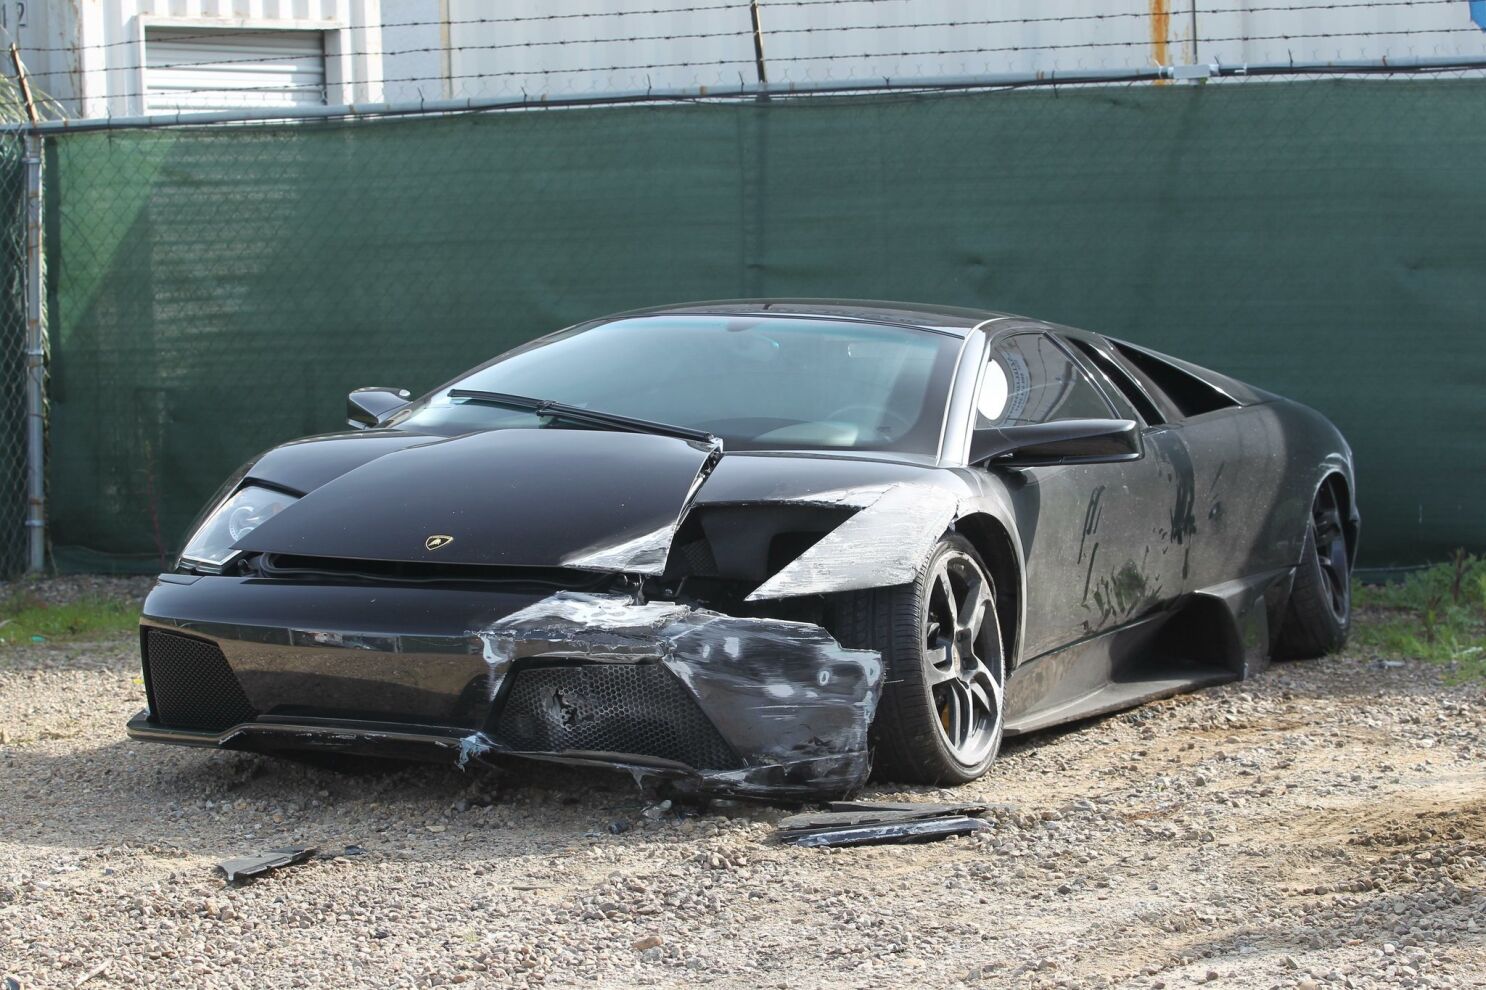 Crashed Lamborghini still not claimed - The San Diego Union-Tribune